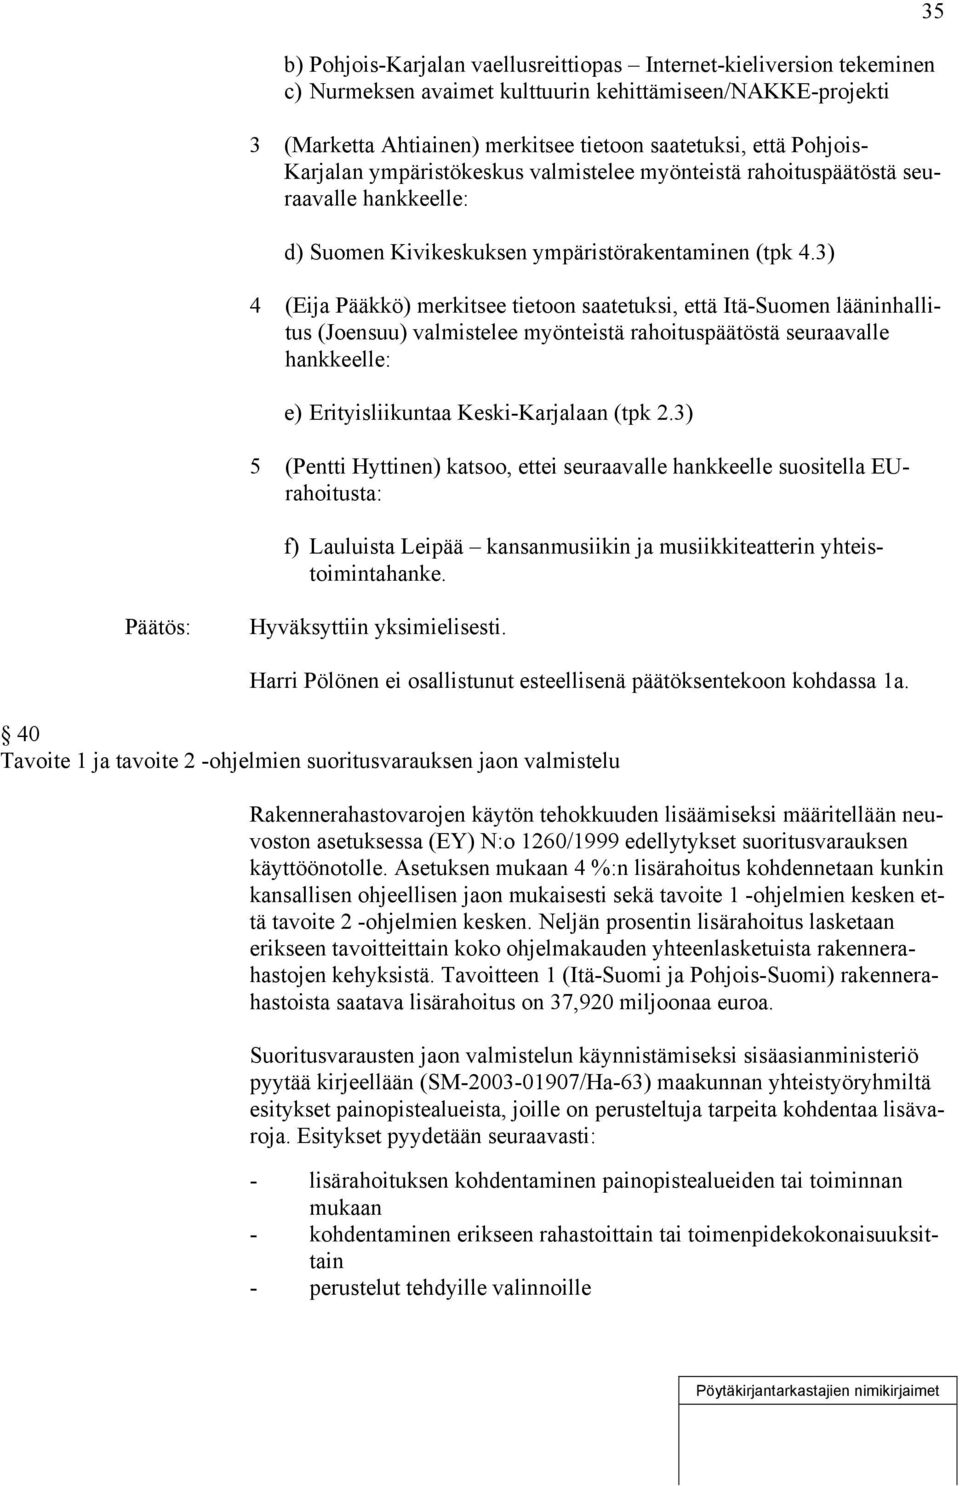 3) 4 (Eija Pääkkö) merkitsee tietoon saatetuksi, että Itä-Suomen lääninhallitus (Joensuu) valmistelee myönteistä rahoituspäätöstä seuraavalle hankkeelle: e) Erityisliikuntaa Keski-Karjalaan (tpk 2.